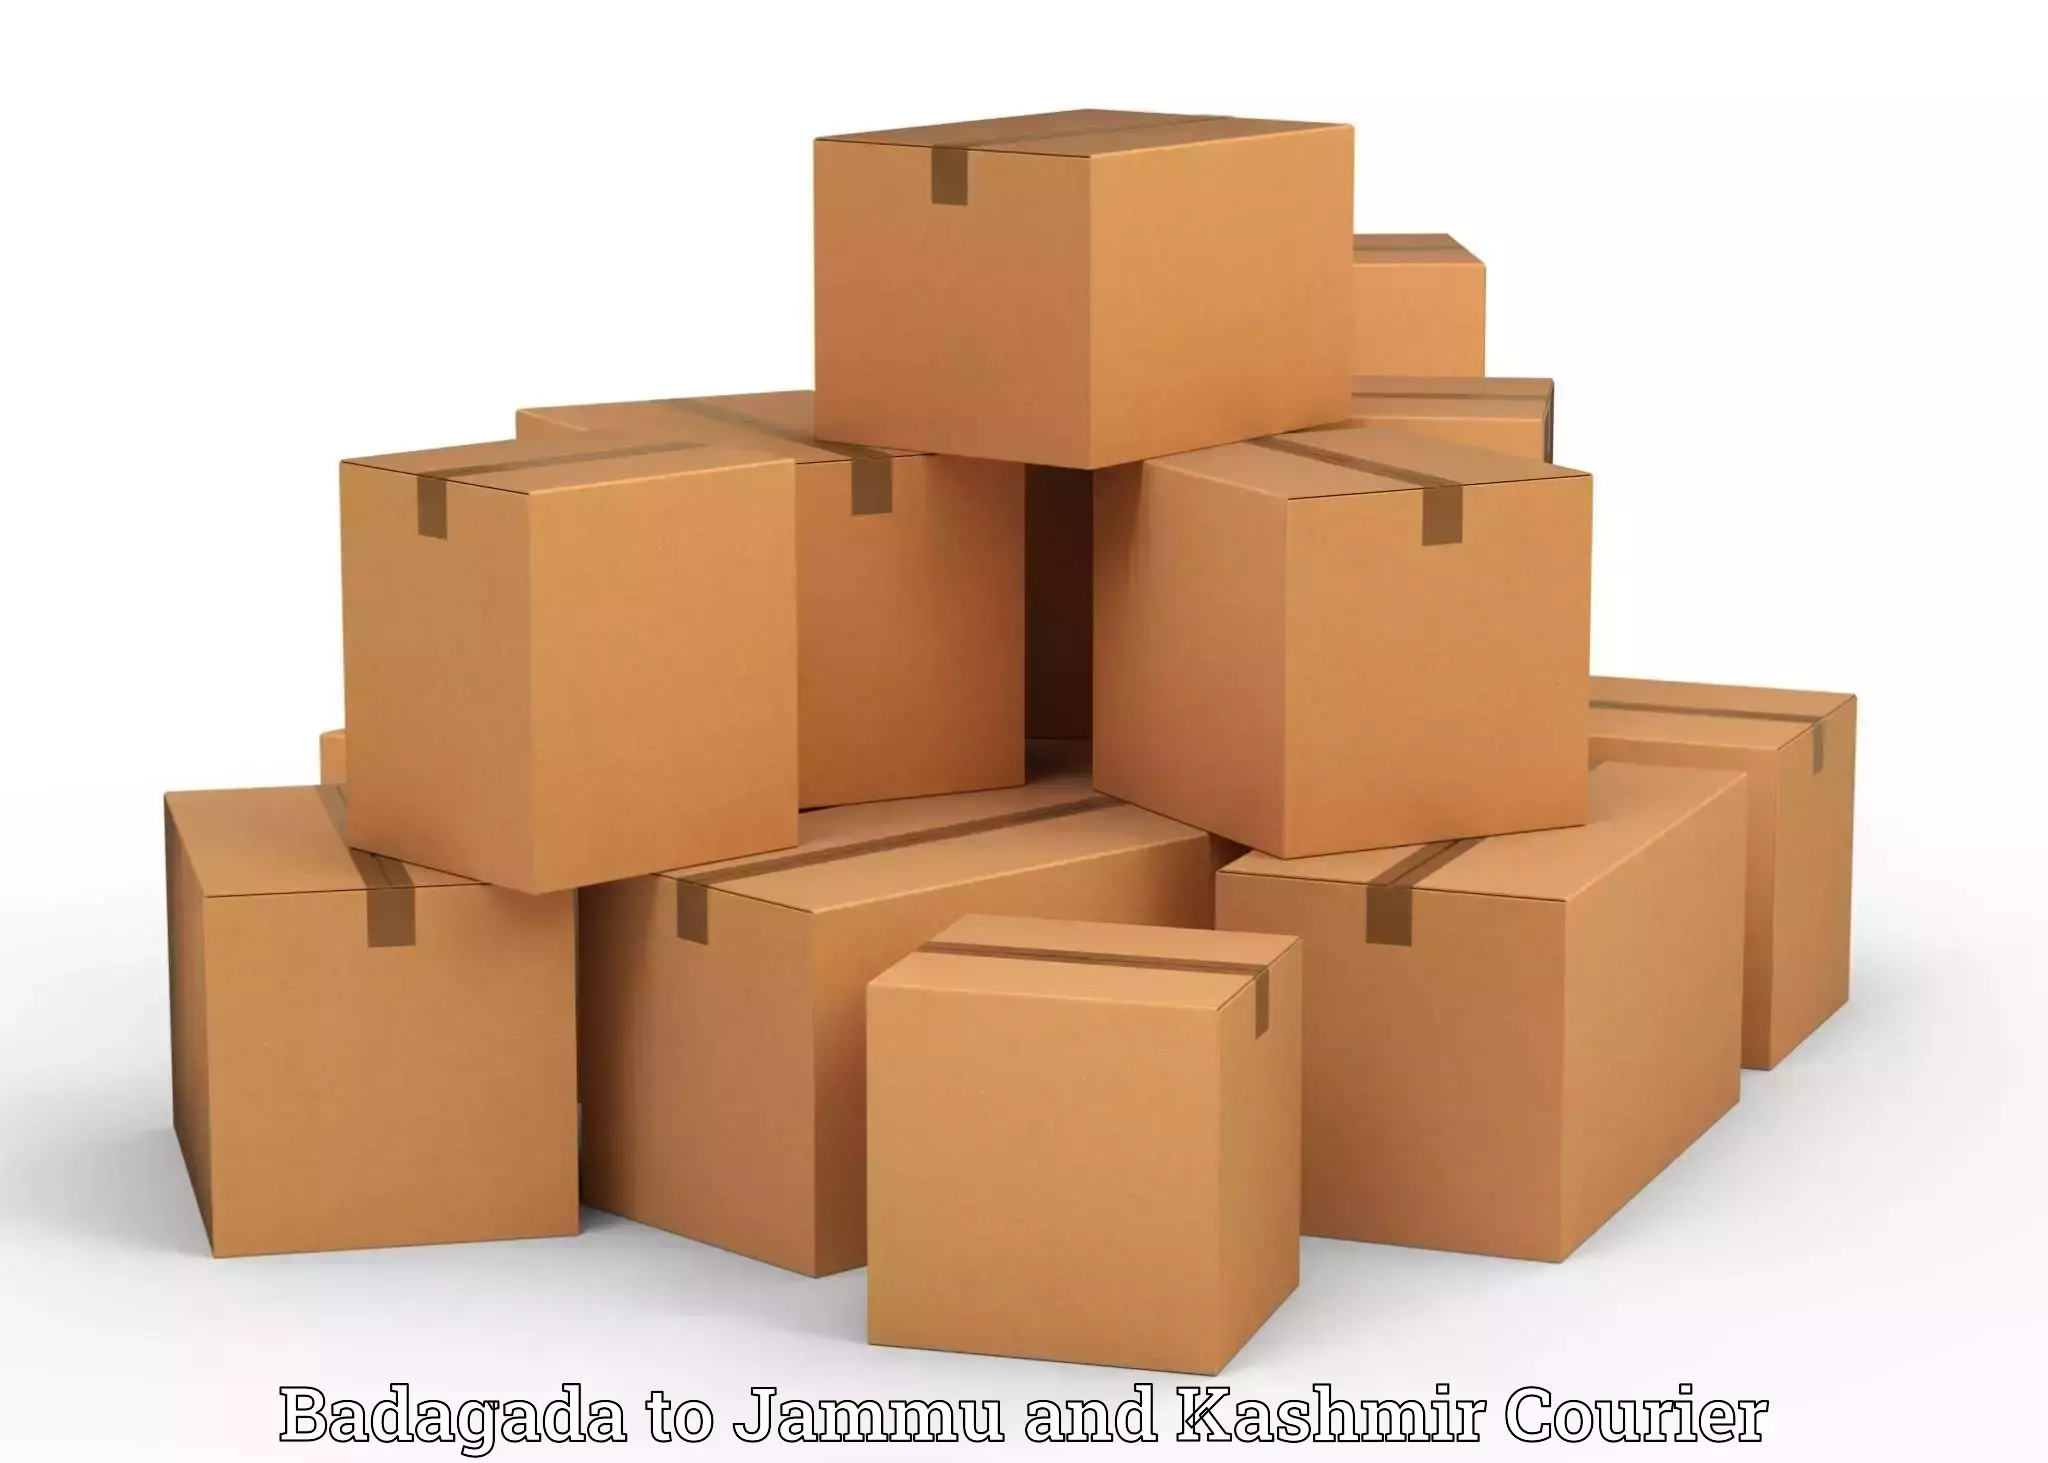 Furniture moving experts Badagada to Udhampur